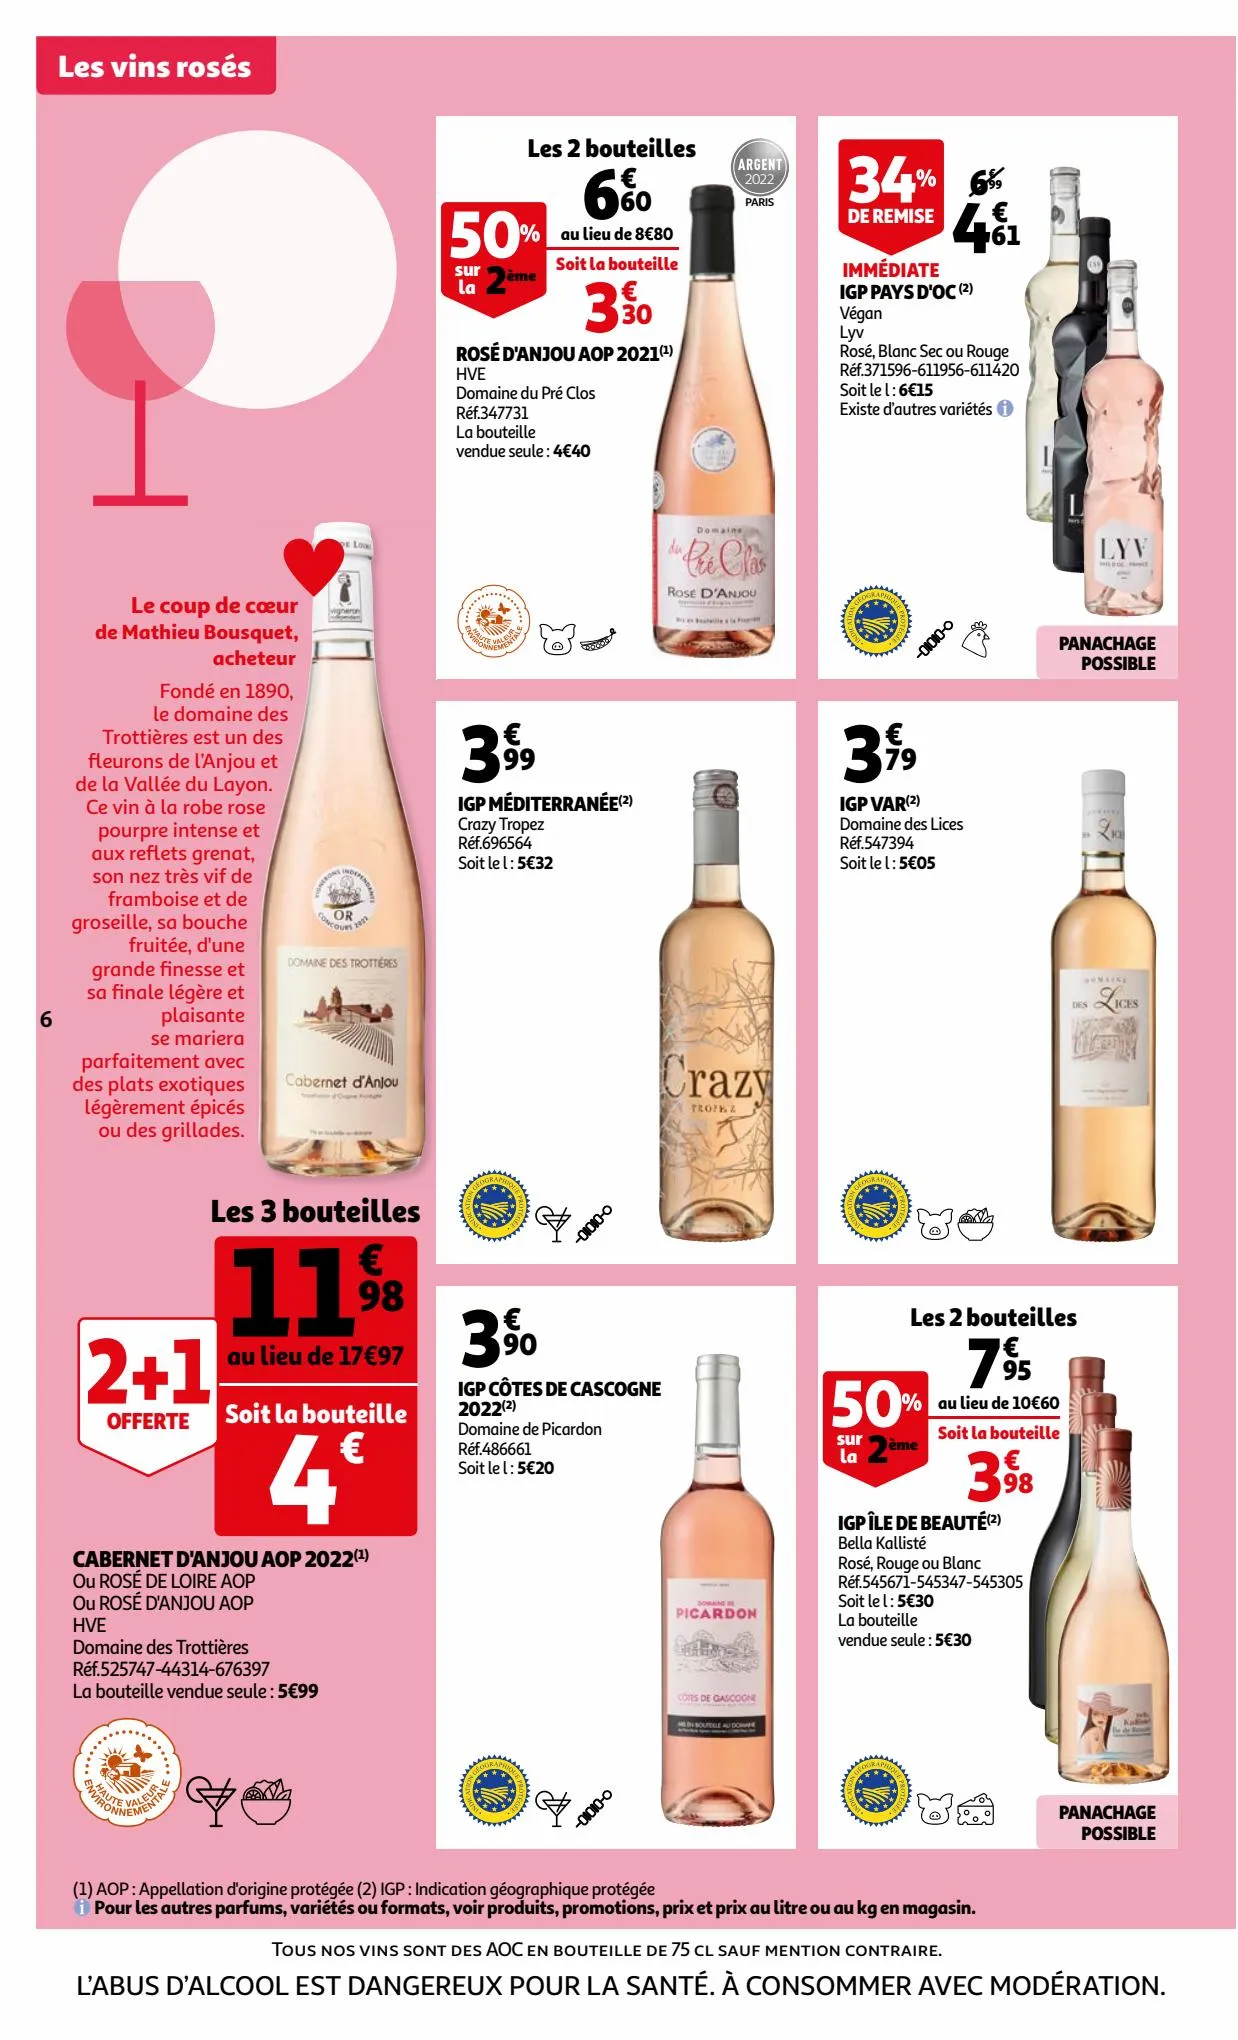 Catalogue La Foire aux vins au plus proche des vignerons, page 00006